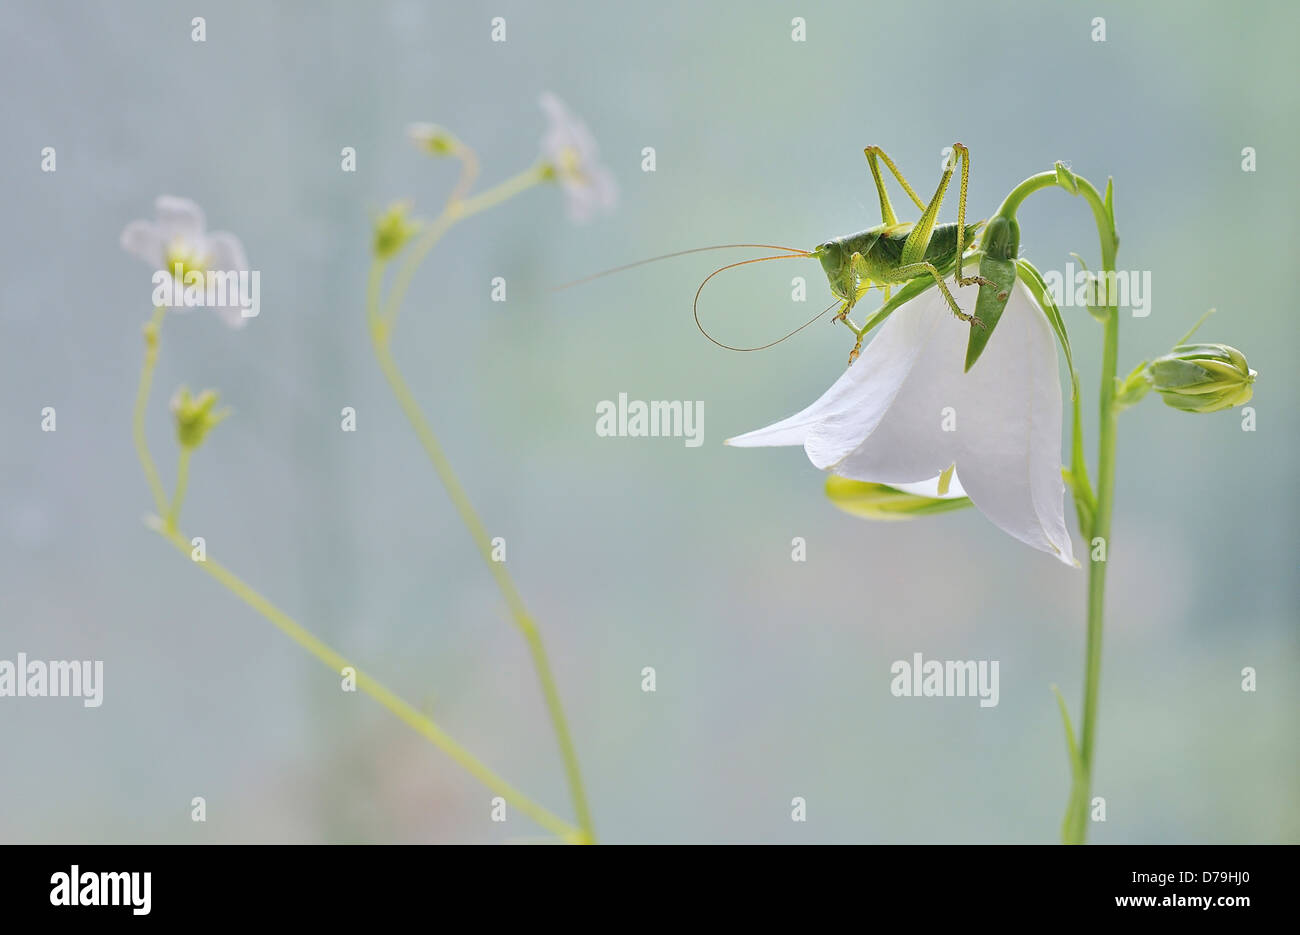 Grasshopper on bell shaped white flower of Campanula carpatica 'Bressingham White', Bellflower. Stock Photo